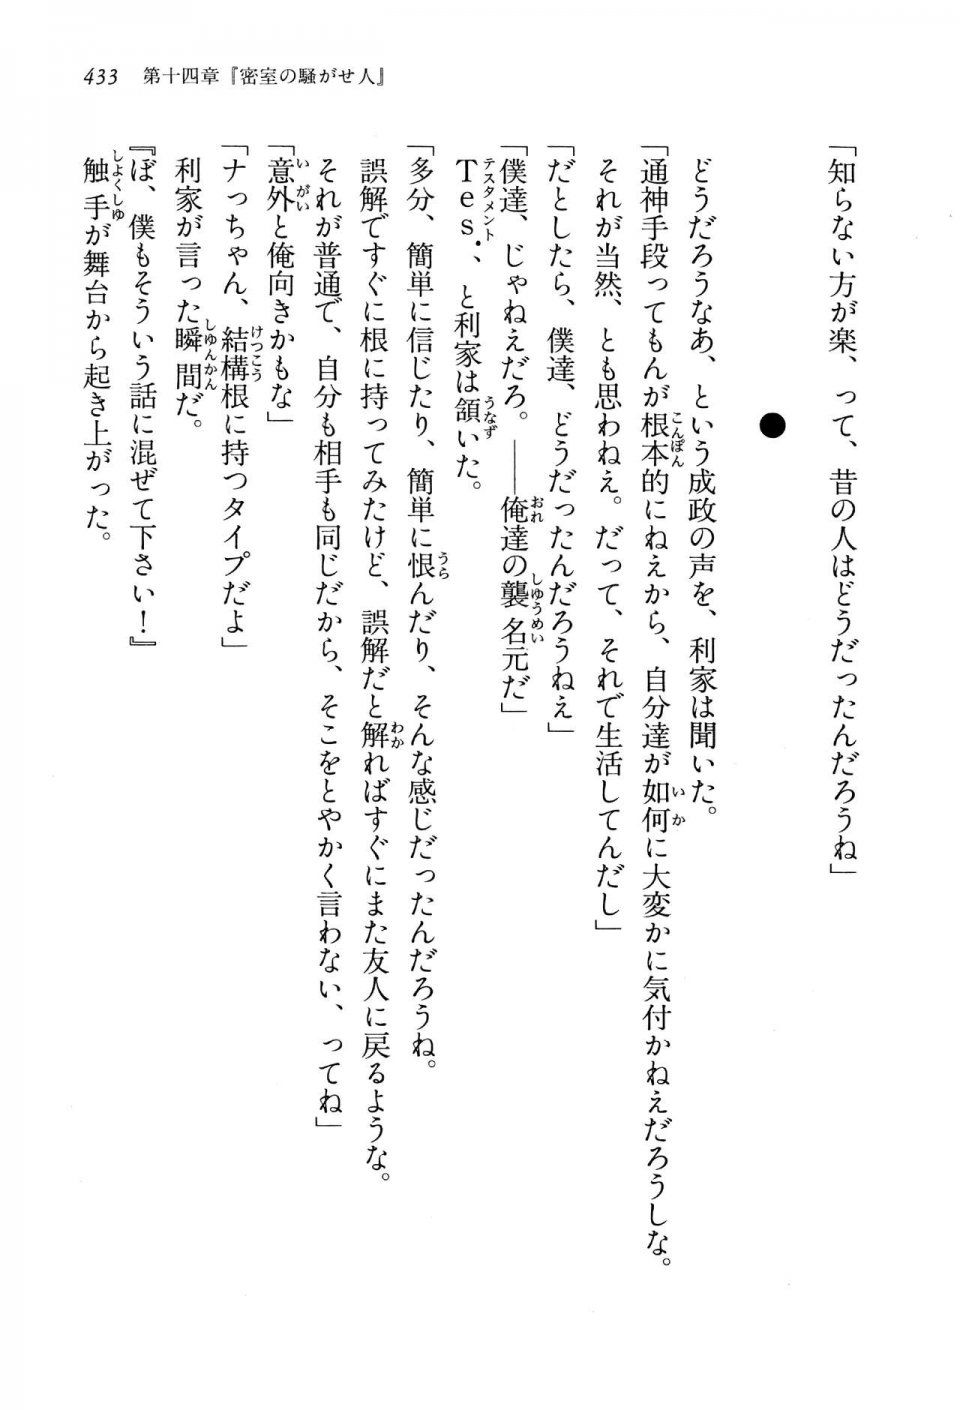 Kyoukai Senjou no Horizon LN Vol 13(6A) - Photo #433